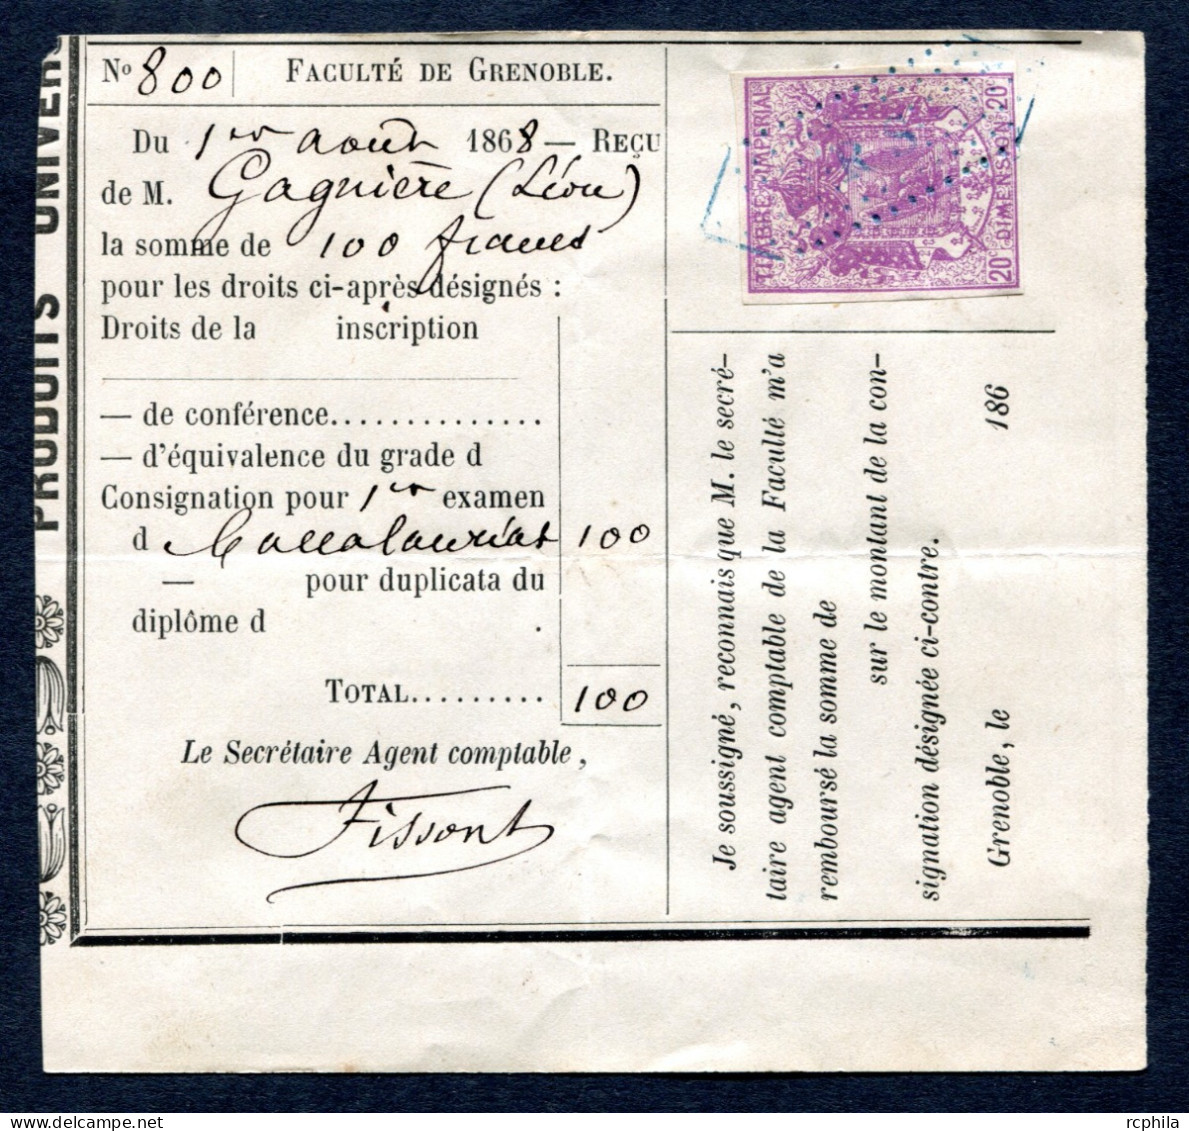 RC 27645 FRANCE 1868 - 20c TIMBRE FISCAL DE DIMENSION SUR DOCUMENT DE LA FACULTÉ DE GRENOBLE 1er EXAMEN DU BACCALAURÉAT - Briefe U. Dokumente